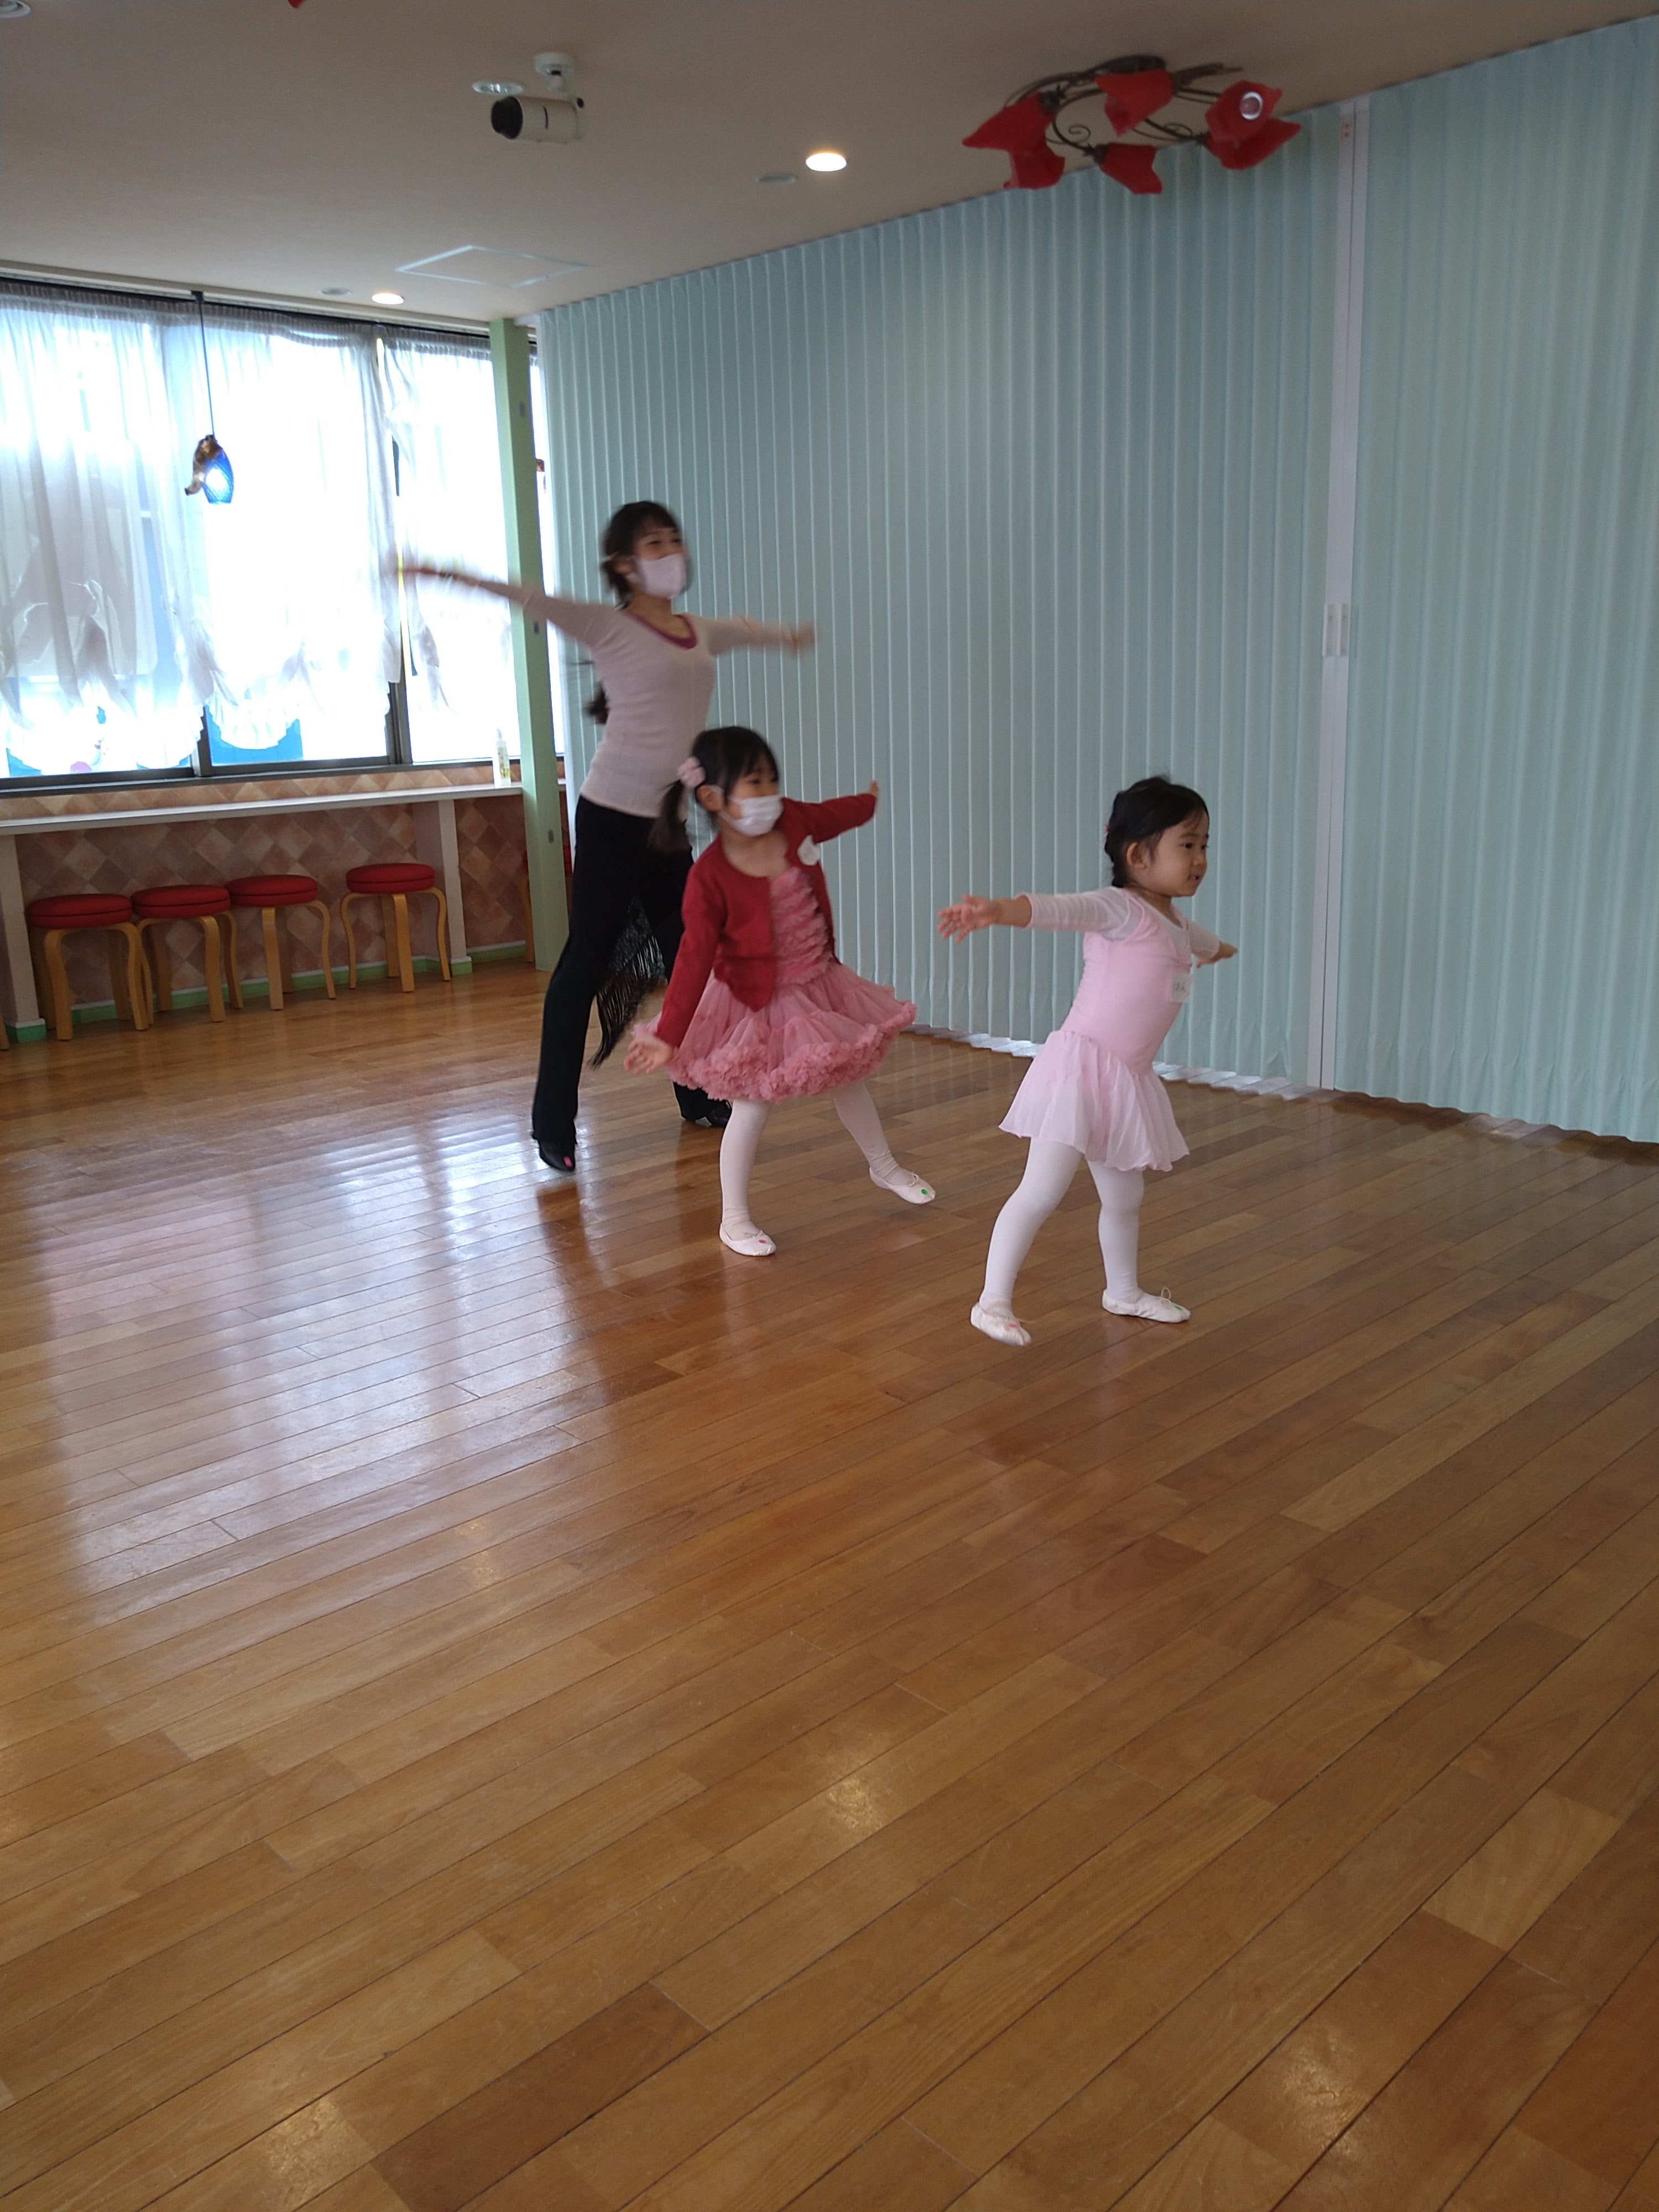 ダンススタジオハーモニーの雰囲気の写真 - 親子で一緒に踊ります。